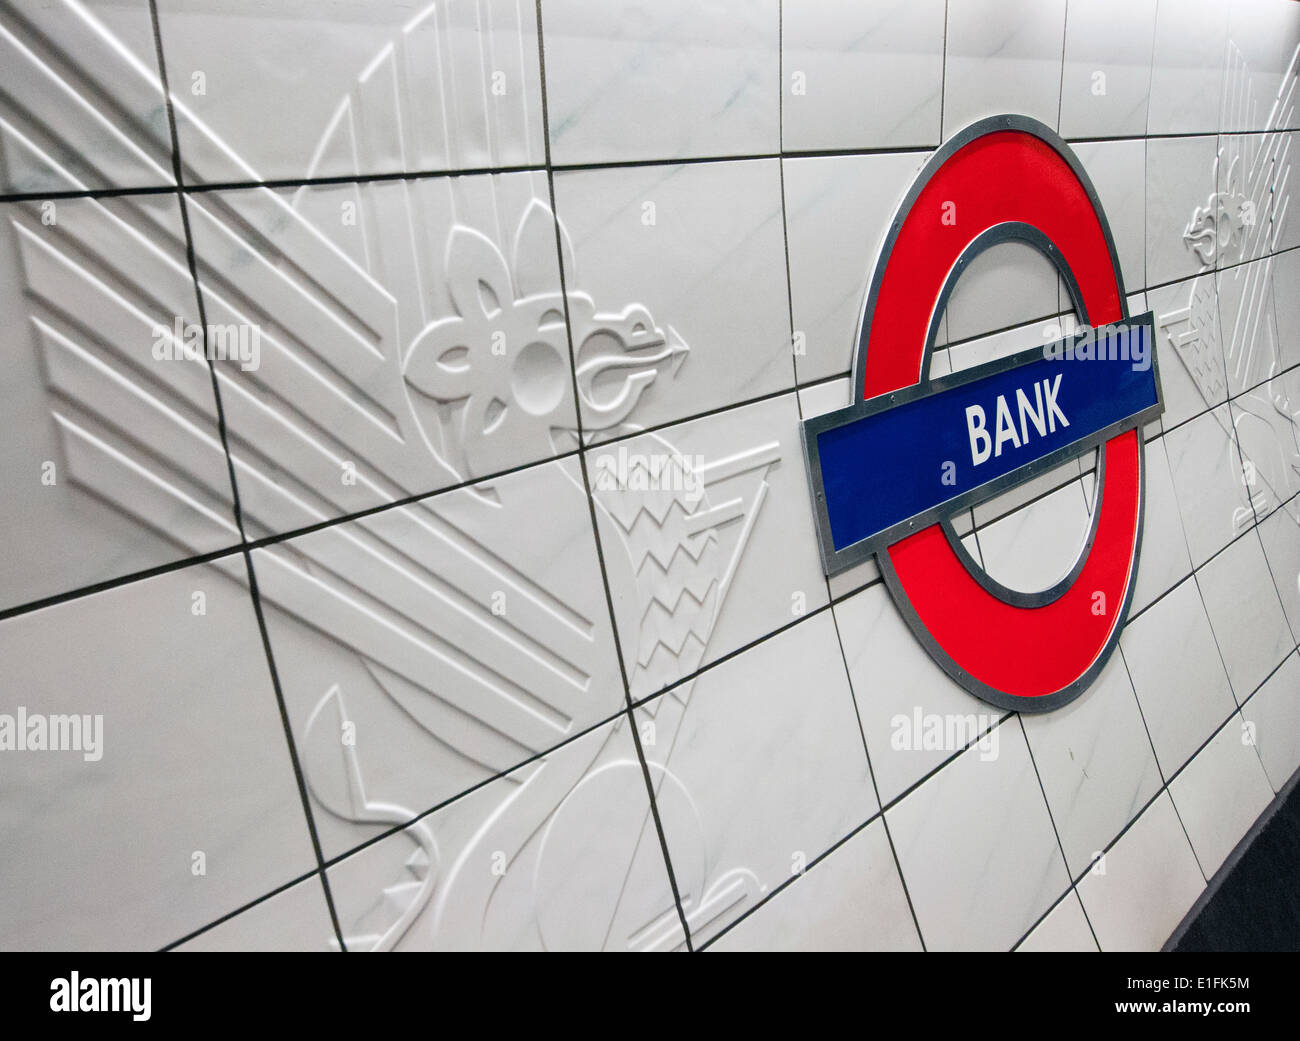 Bank Station on the London Underground, England UK Stock Photo